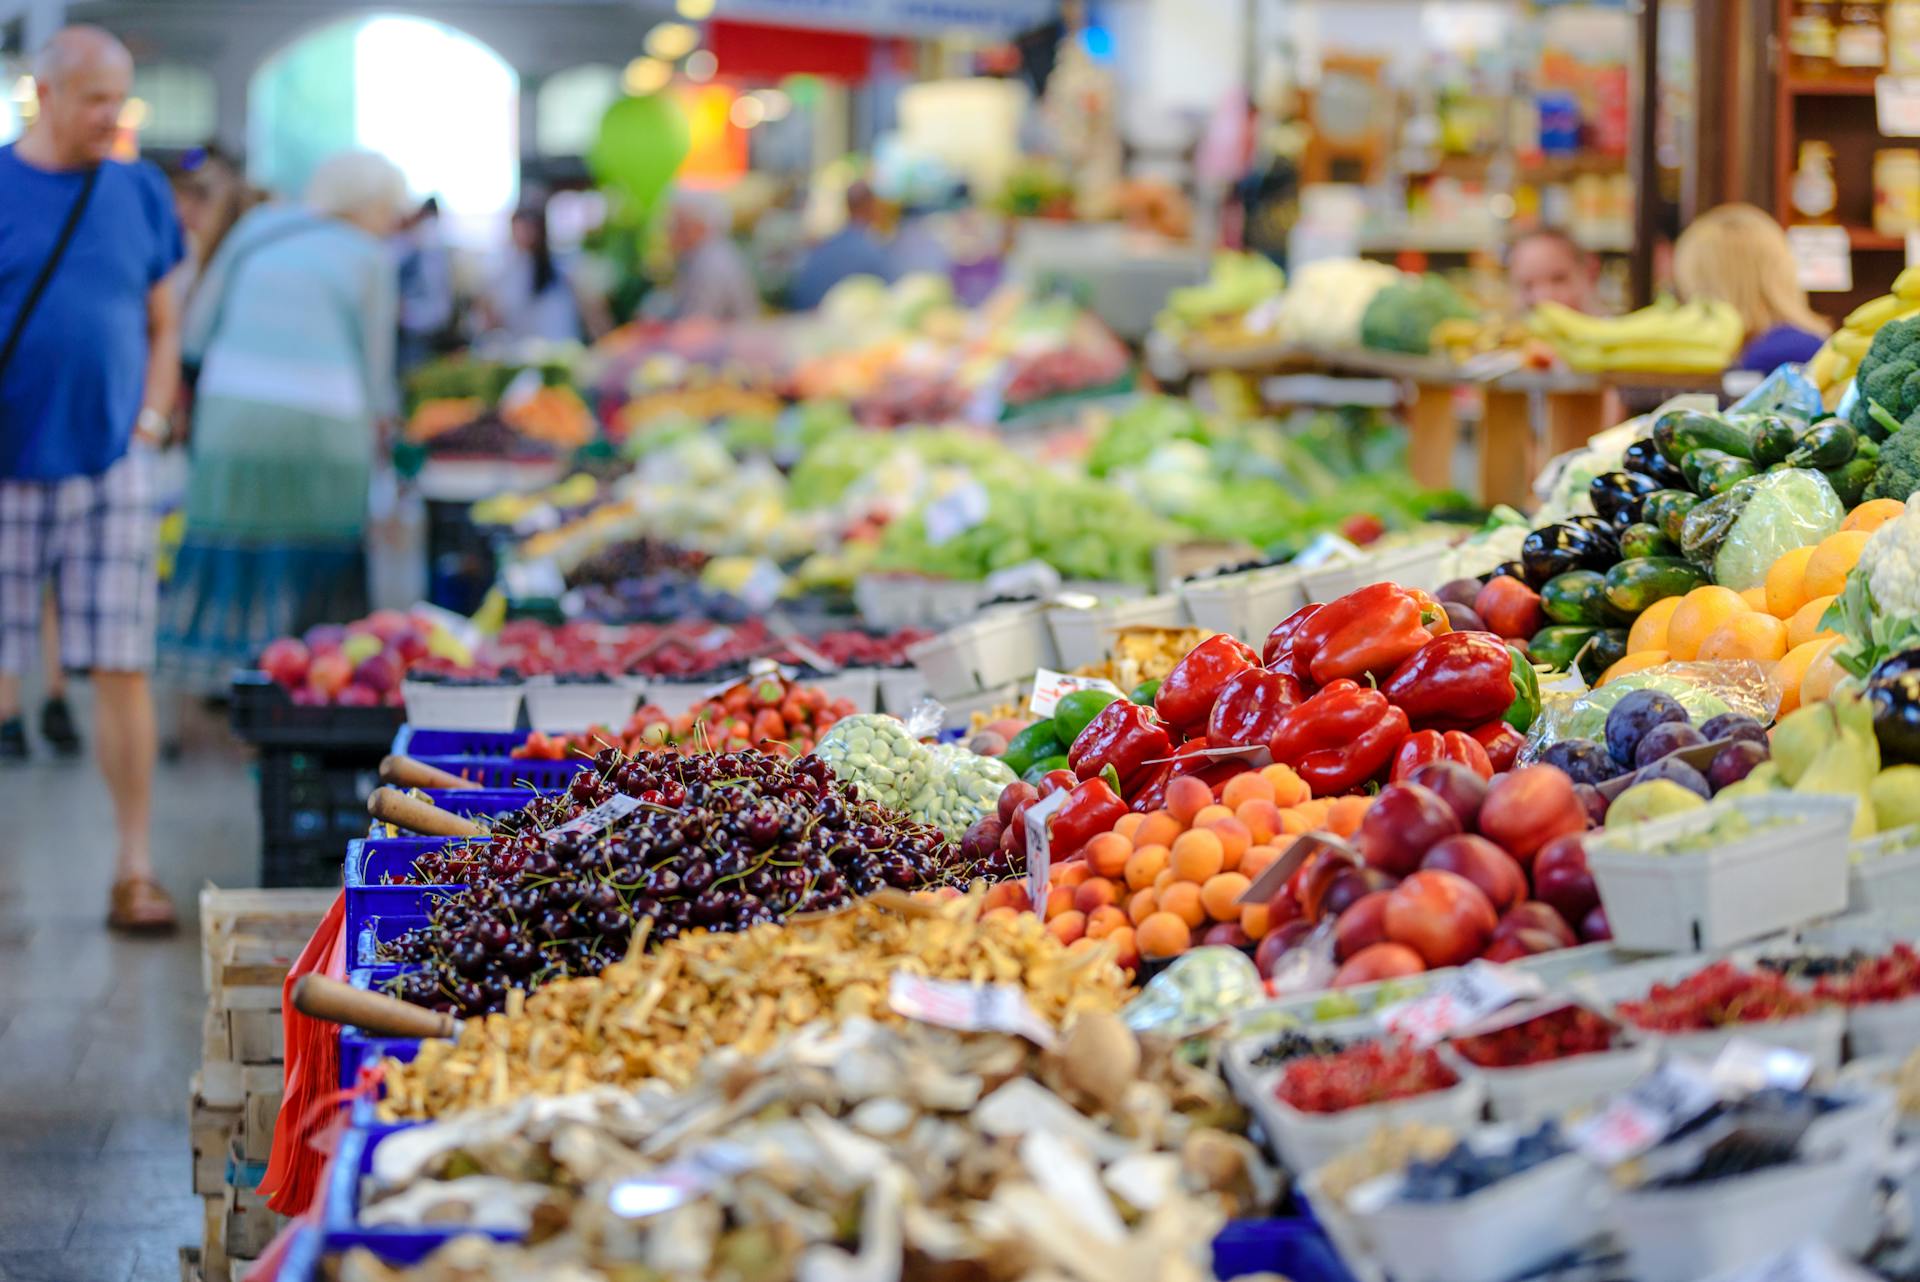 Étals de légumes dans une épicerie | Source : Pexels